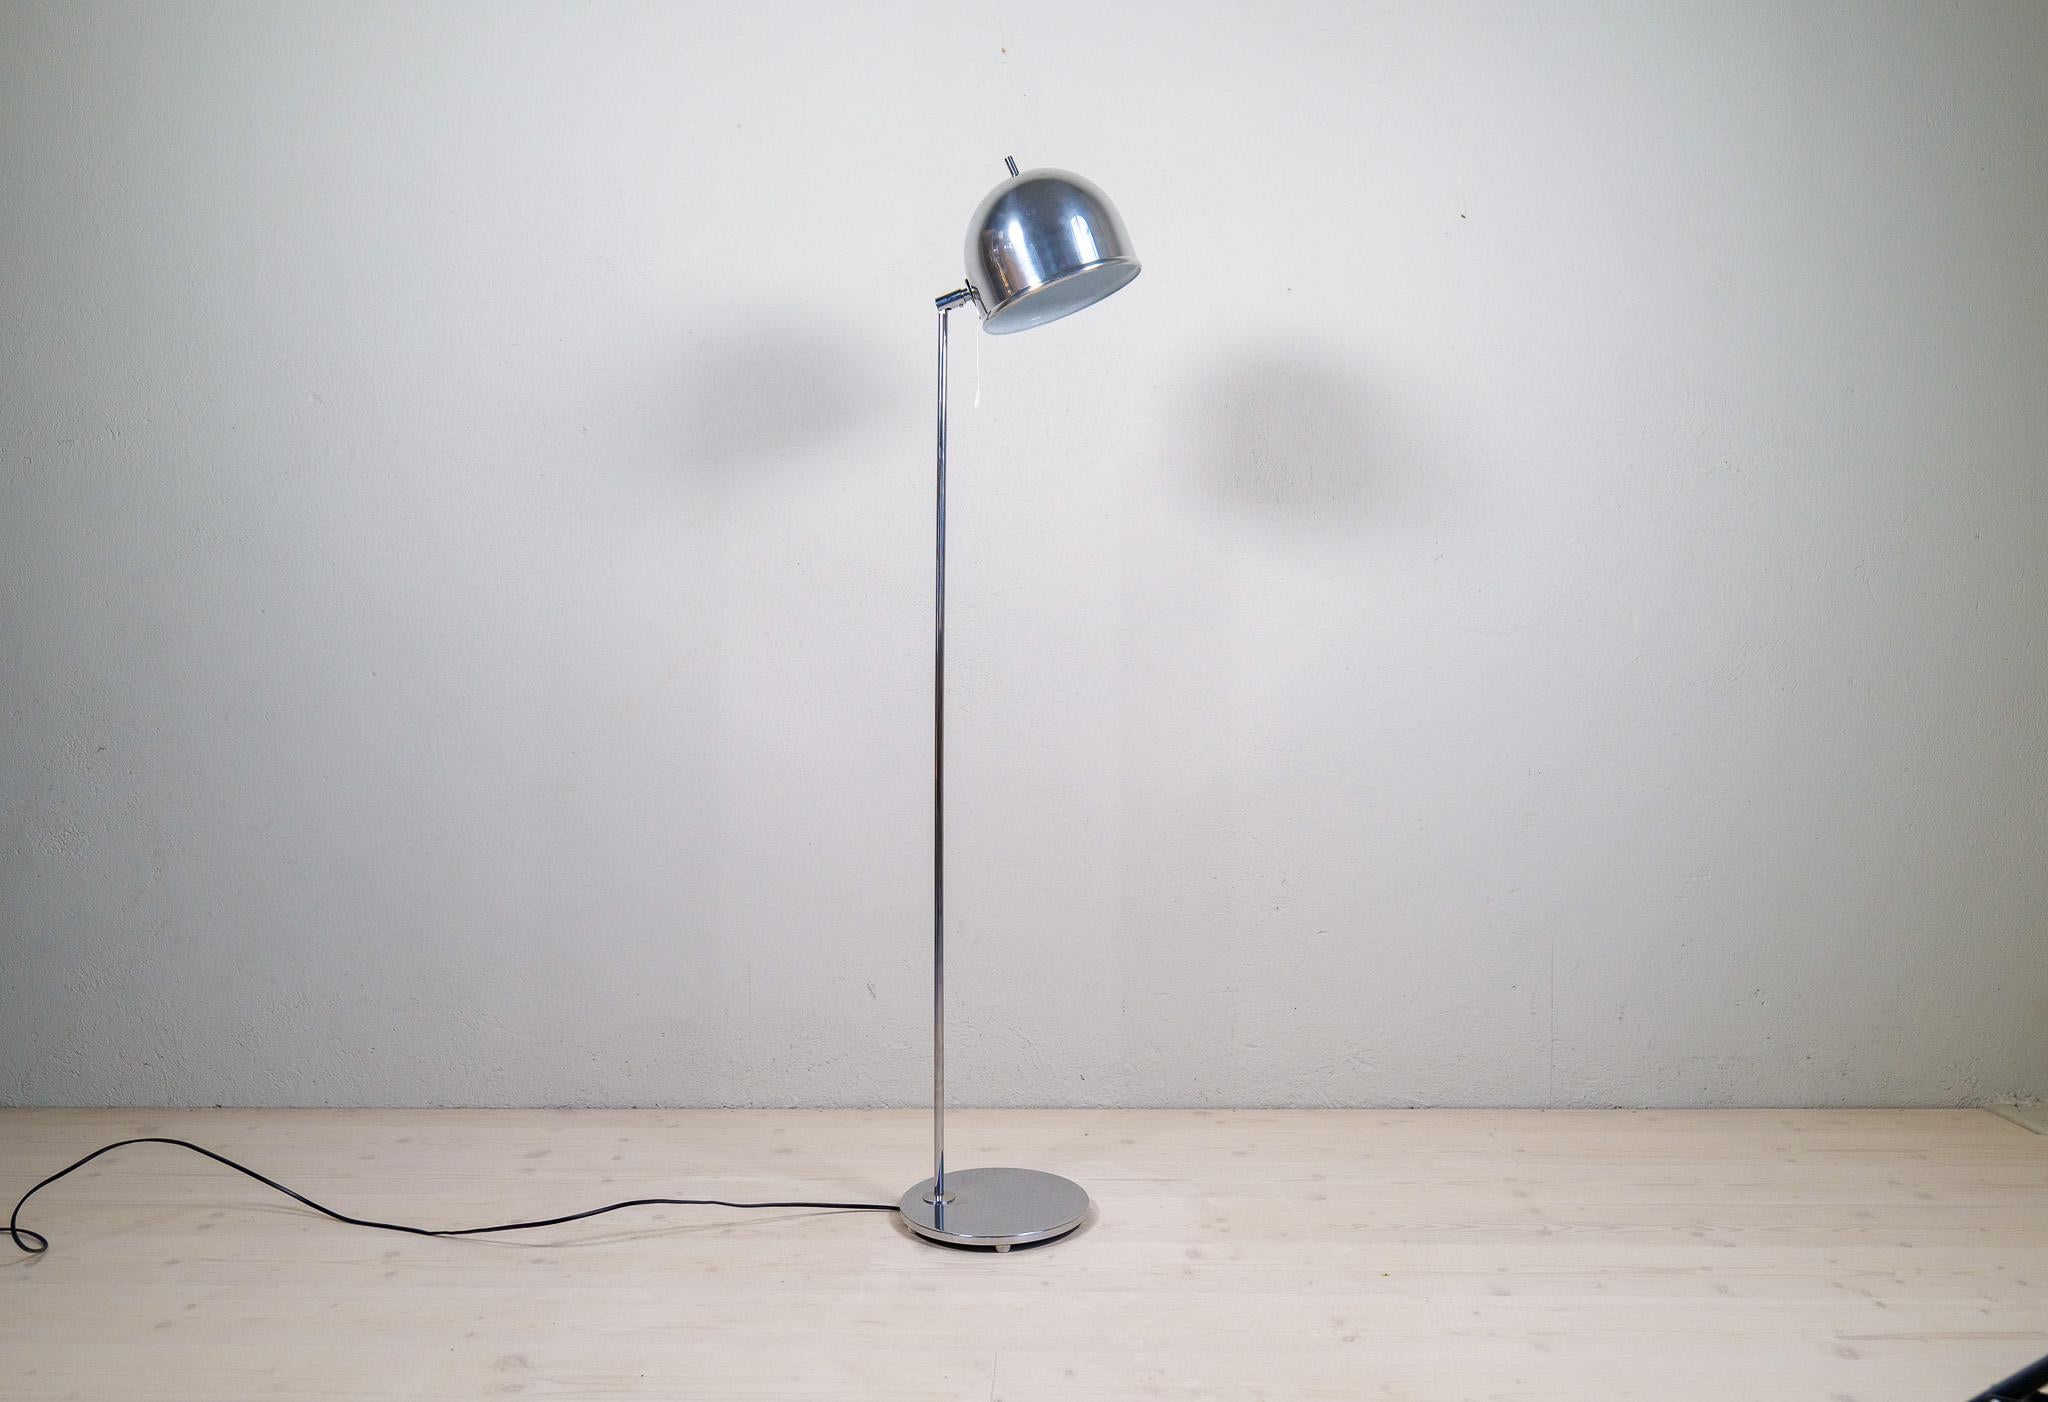 Ce lampadaire en acier chromé a été fabriqué par Bergboms Sweden dans les années 1960. Eje Ahlgren a créé le design de cette lampe emblématique, cette fois-ci en chrome et une pièce de l'ère spatiale à posséder. 

Bon état de fonctionnement